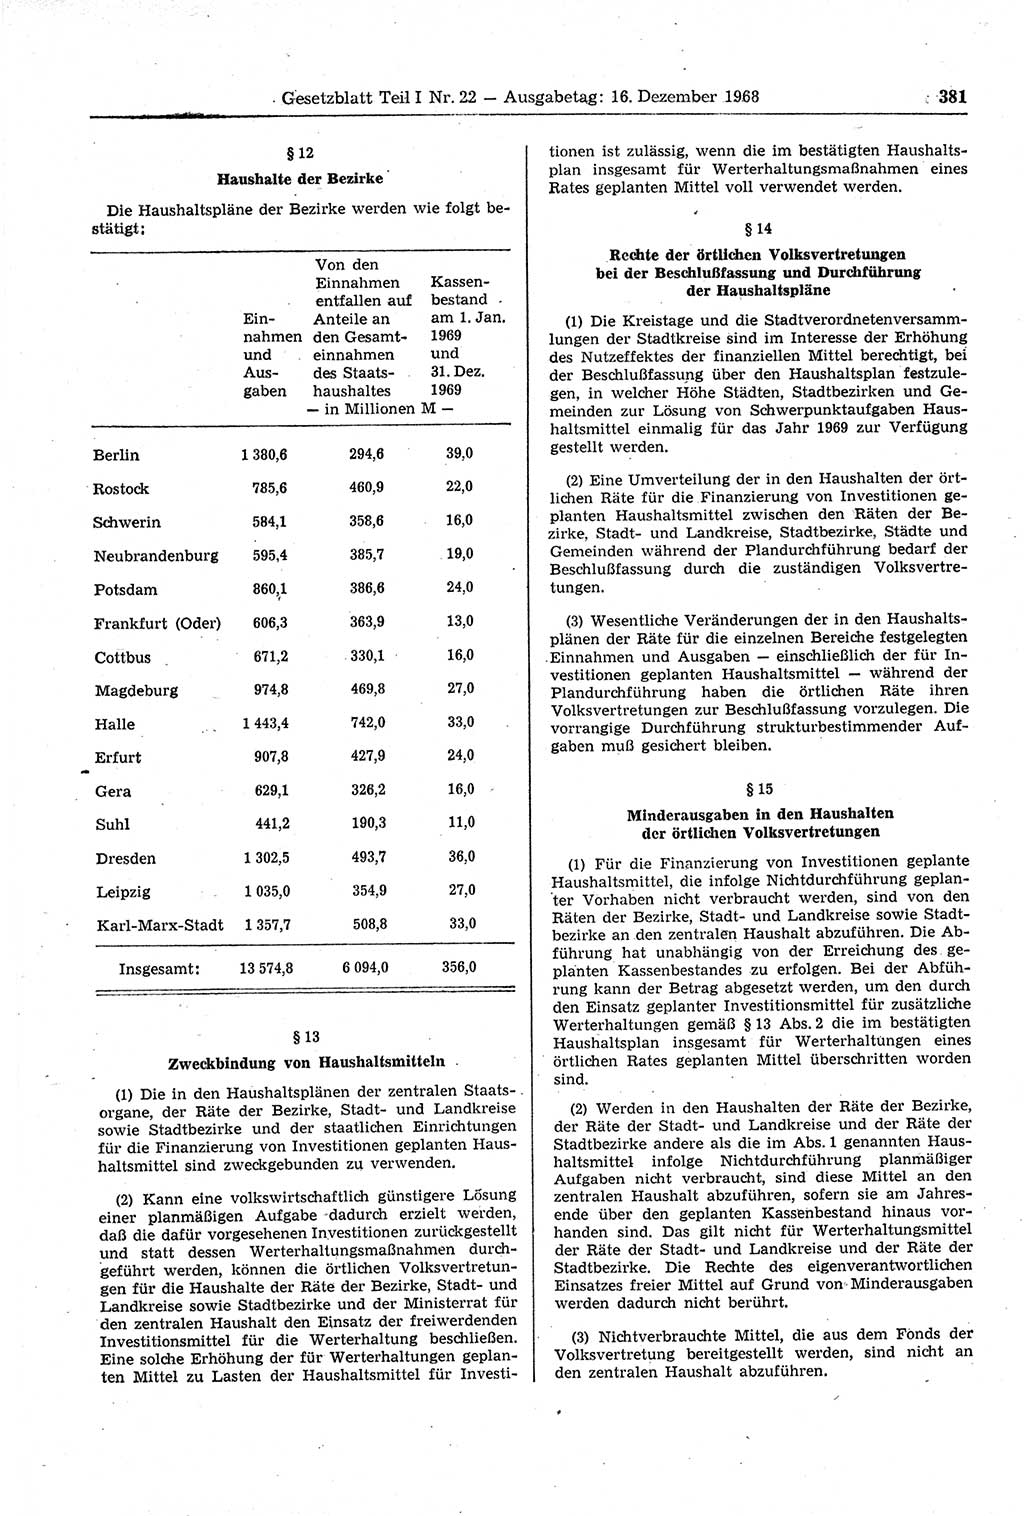 Gesetzblatt (GBl.) der Deutschen Demokratischen Republik (DDR) Teil Ⅰ 1968, Seite 381 (GBl. DDR Ⅰ 1968, S. 381)